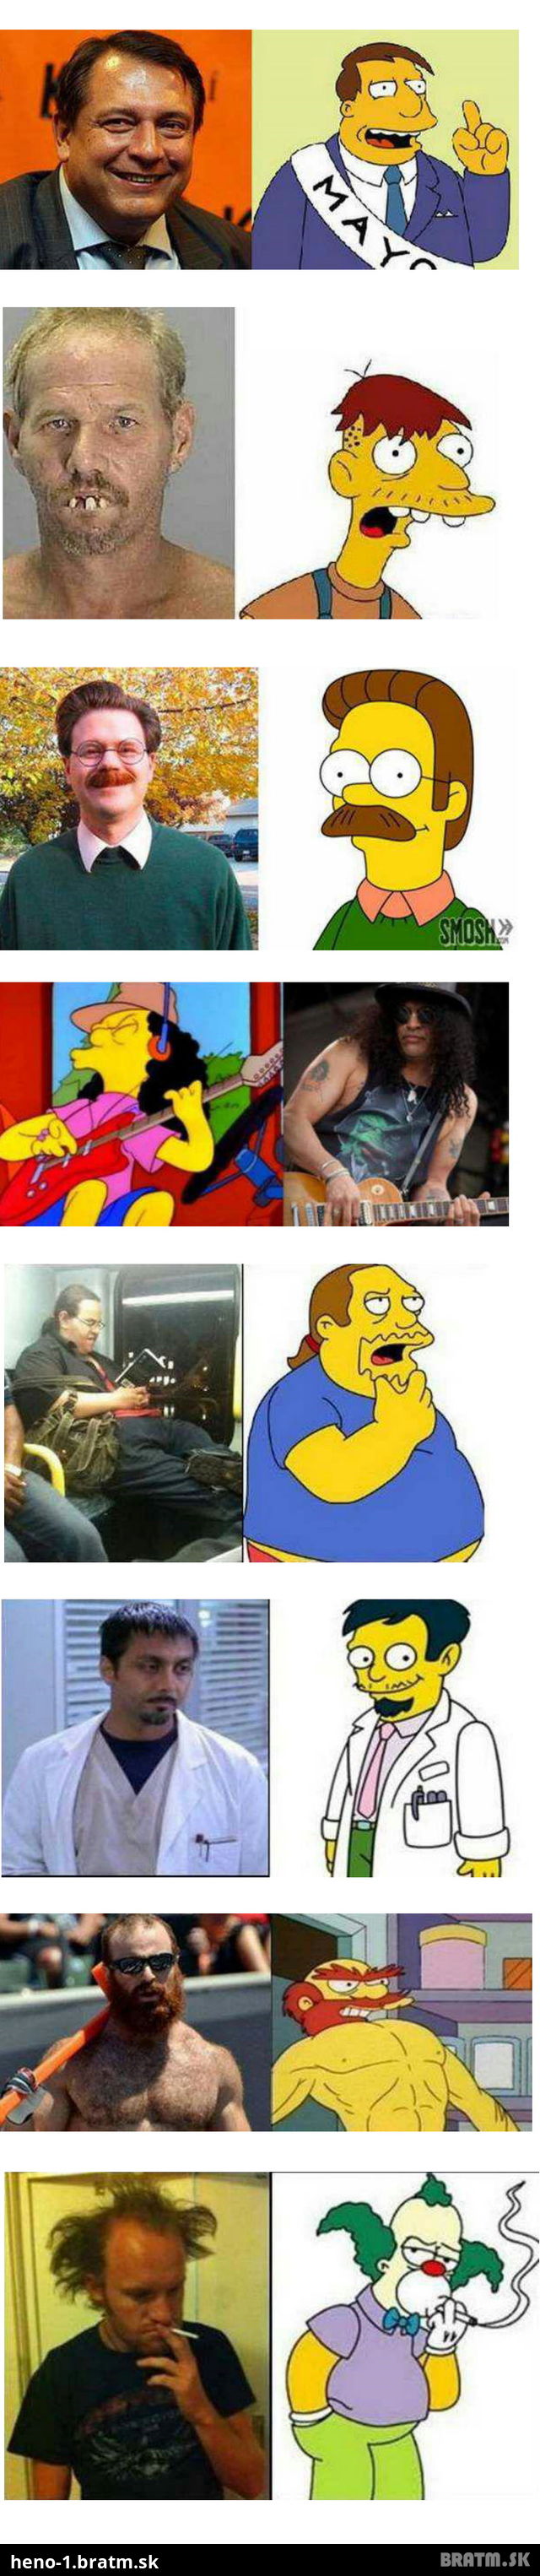 Neuveriteľné! The Simpsons majú skutočných dvojnikov!:) #VOL 2